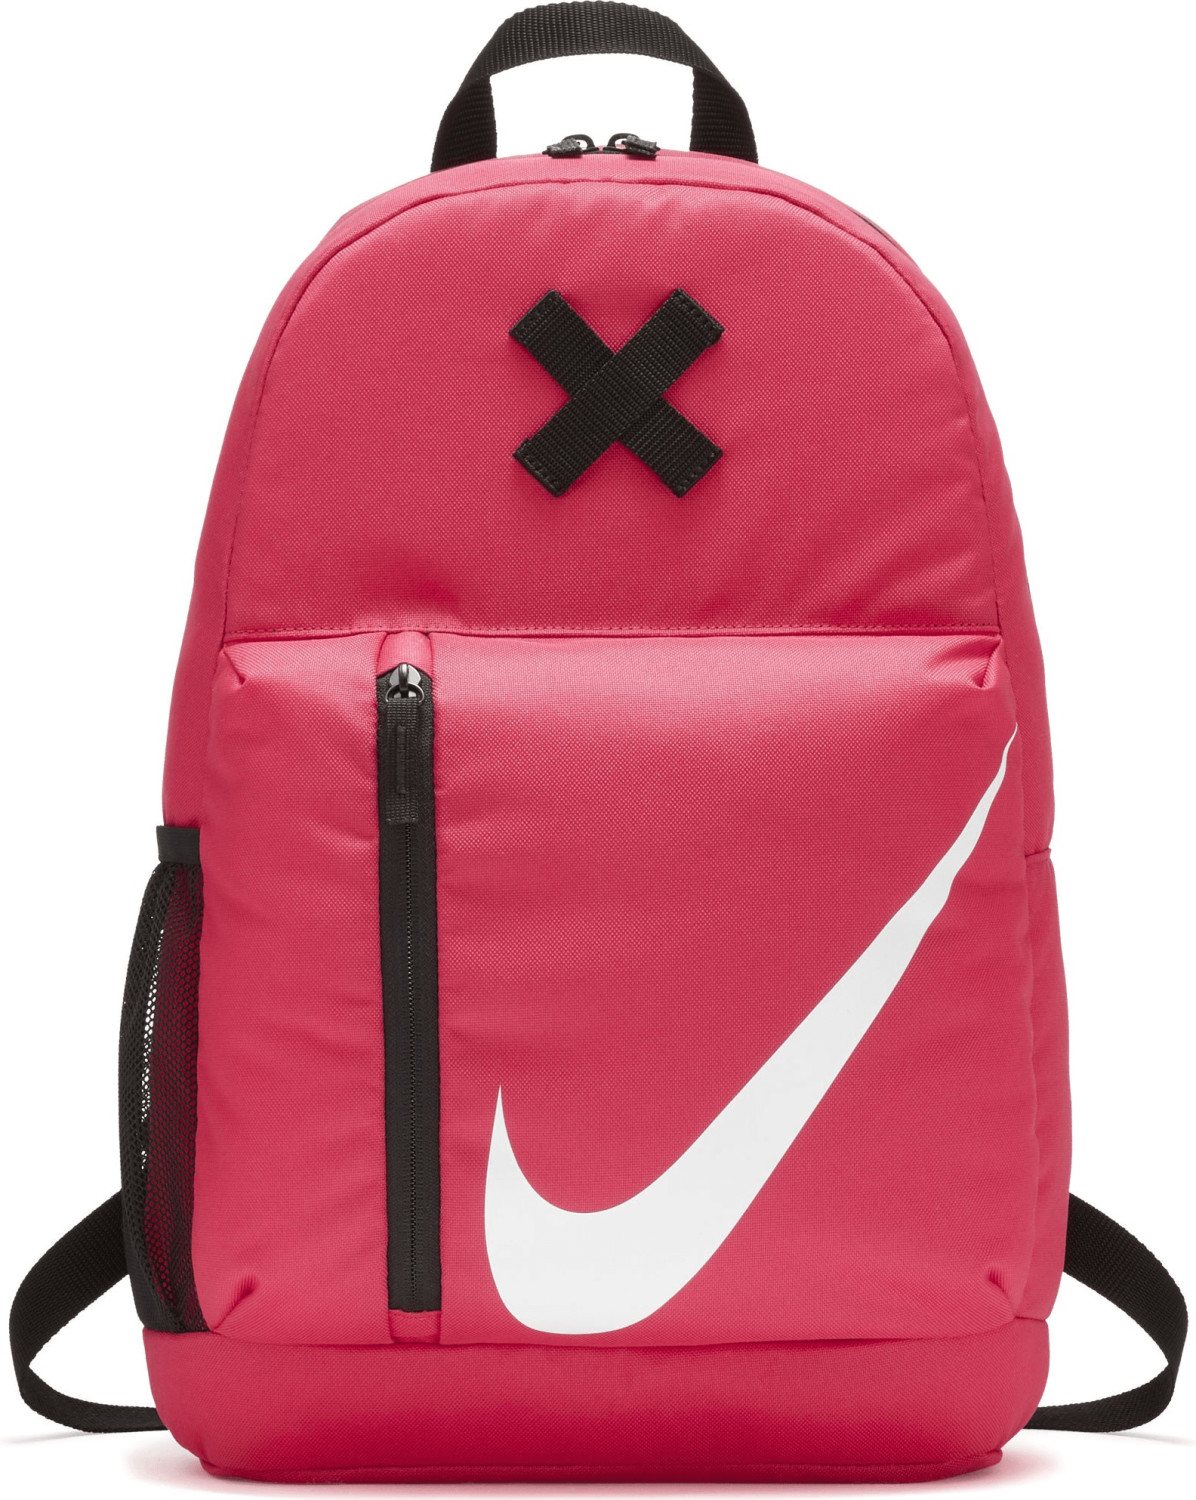 Nike Elemental Backpack rush pink/black/white (BA5405)